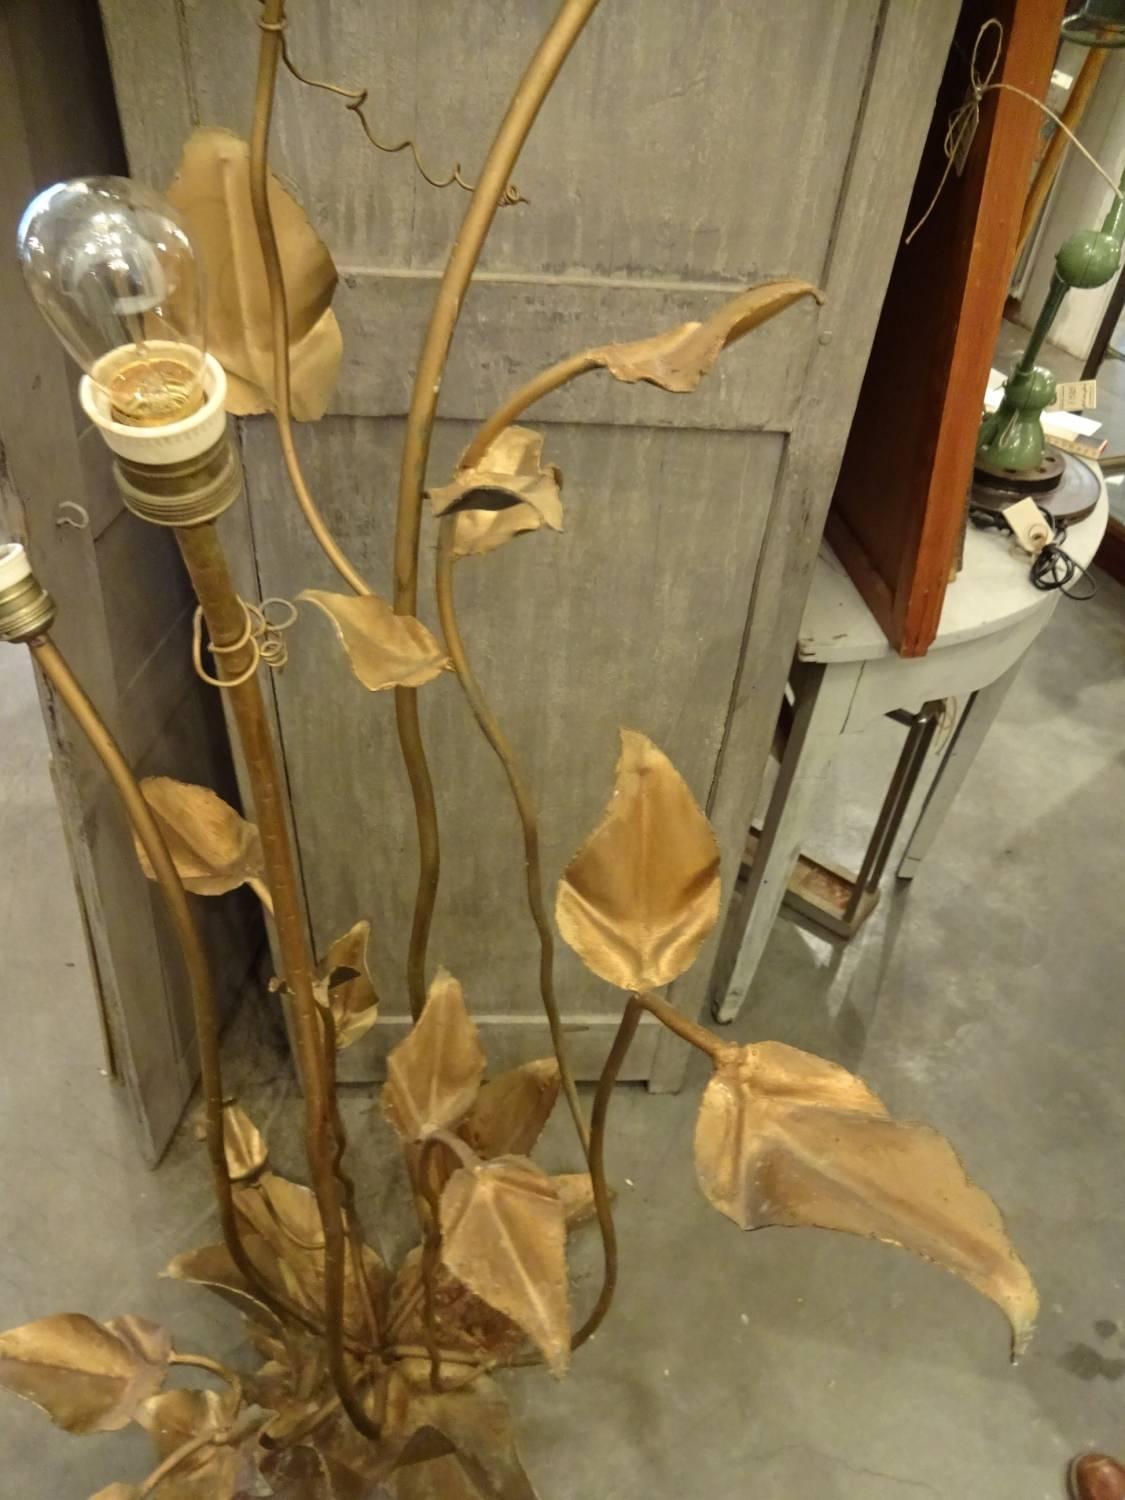 Exceptionnel lampadaire en laiton, en forme de plante, avec des feuilles et des volutes. Trois sources lumineuses. Depuis les années 1950, en France. Un véritable objet de conversation.